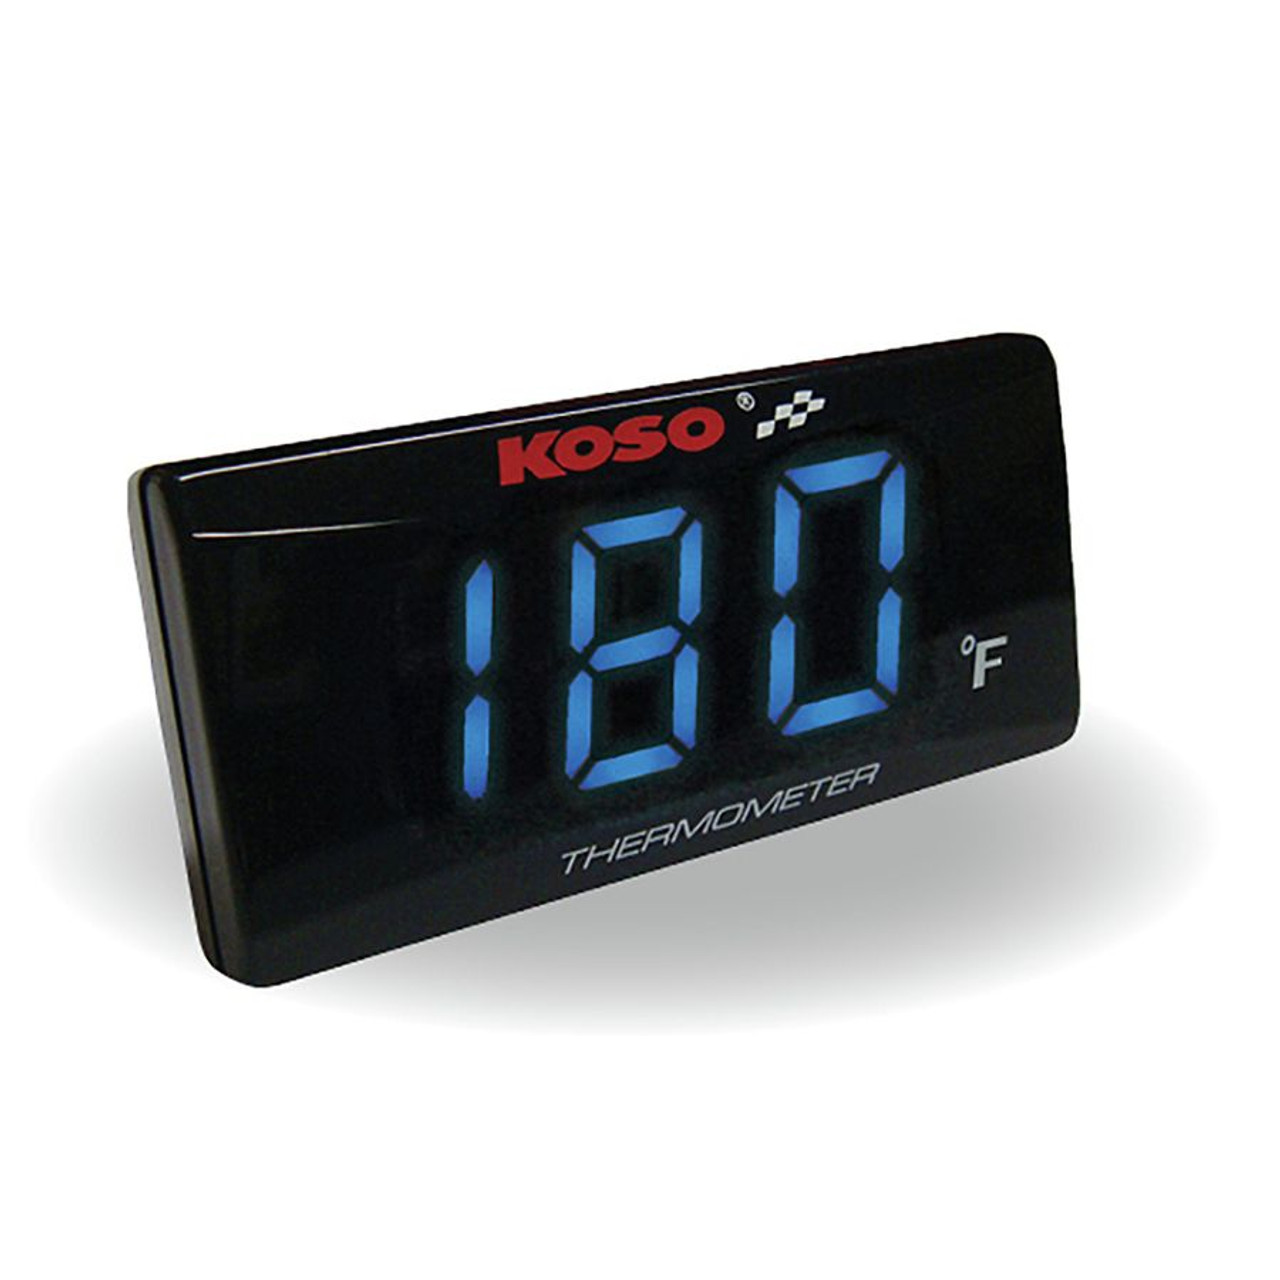 Koso Super Slim Style Thermometer